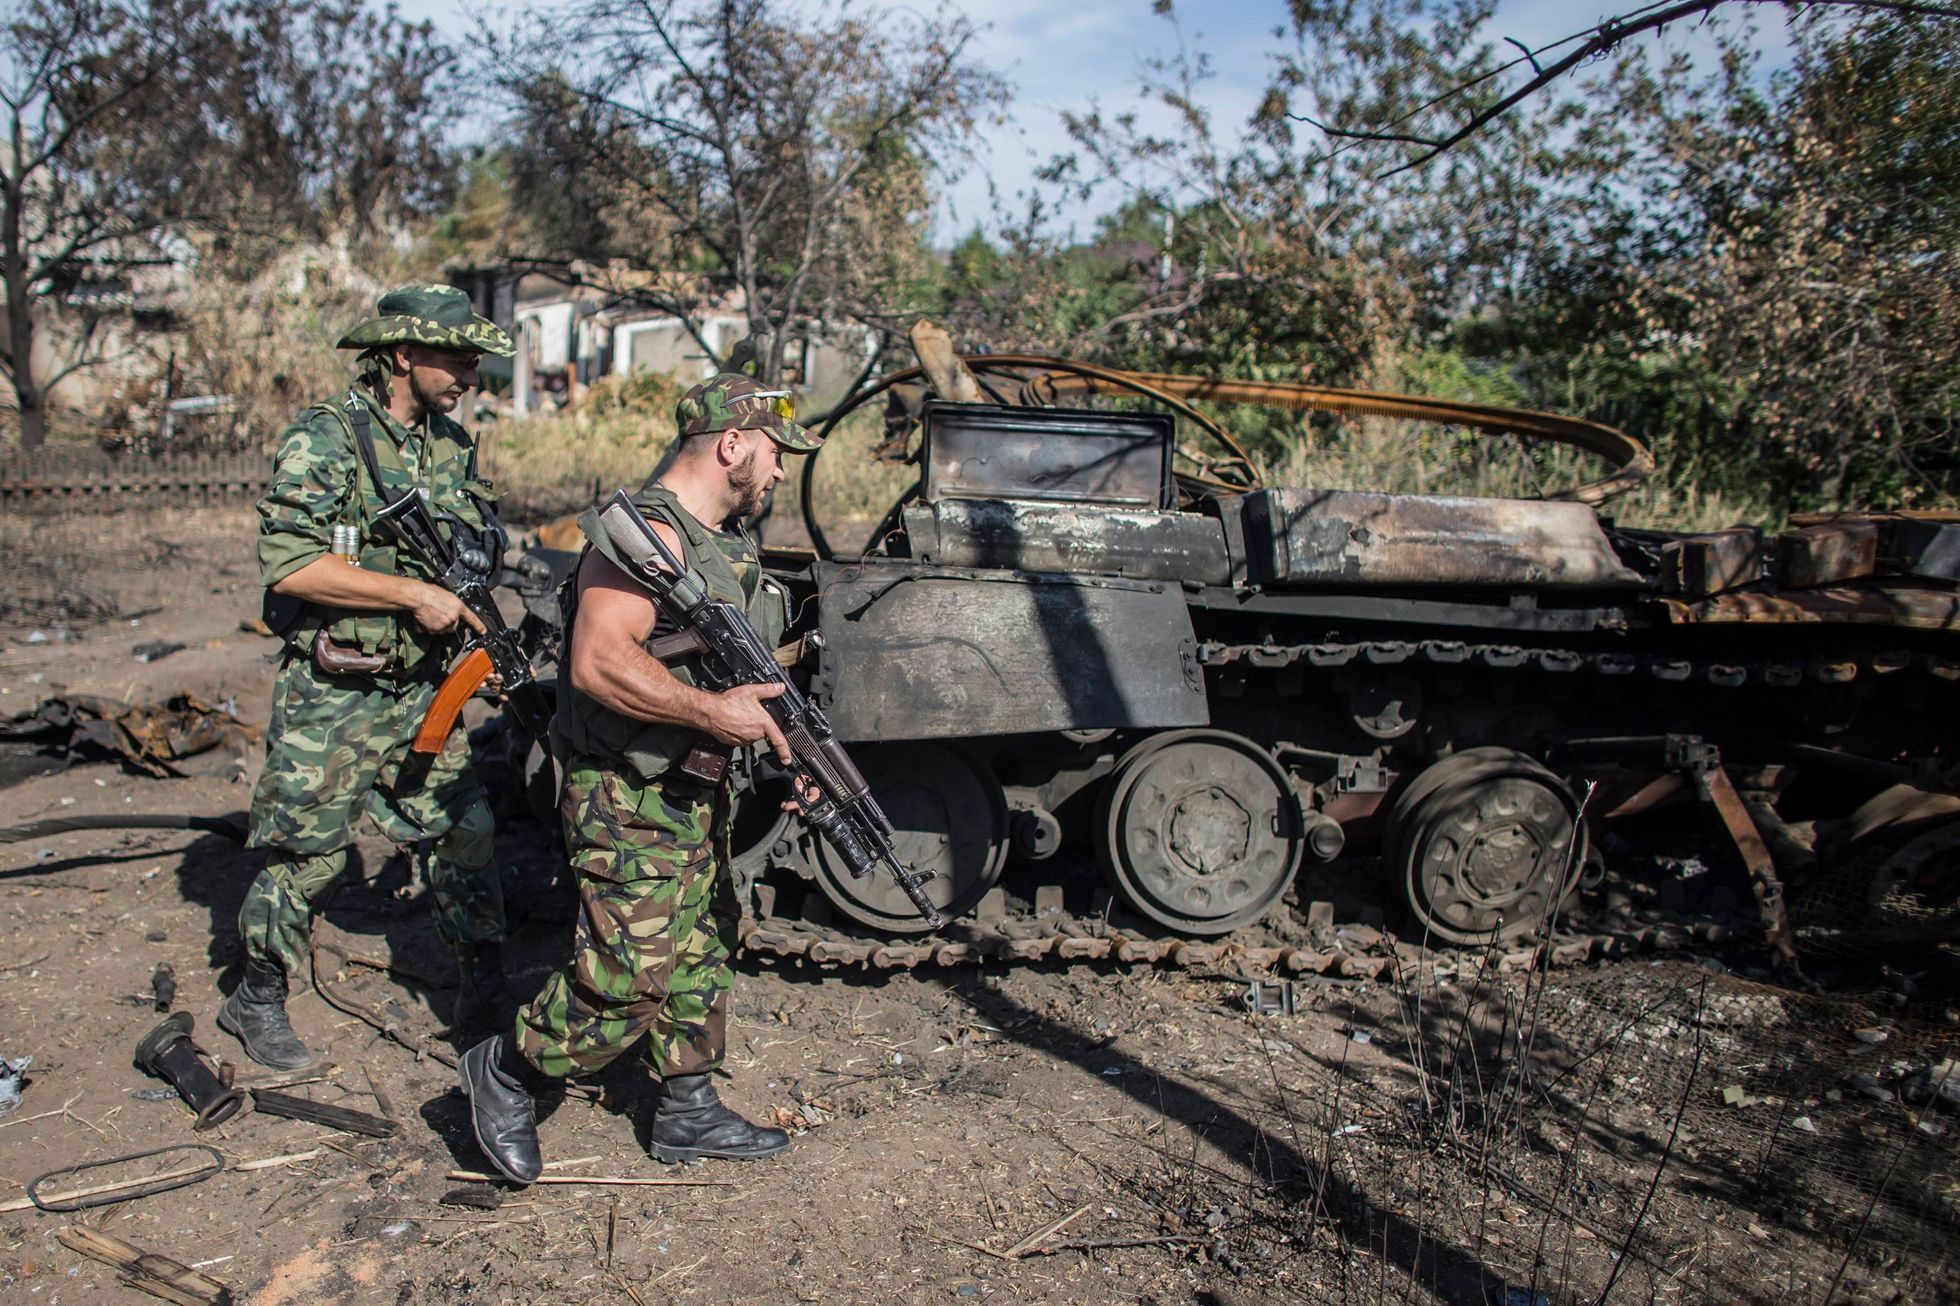 Ukrajina - Luhanská oblast - proruští rebelové